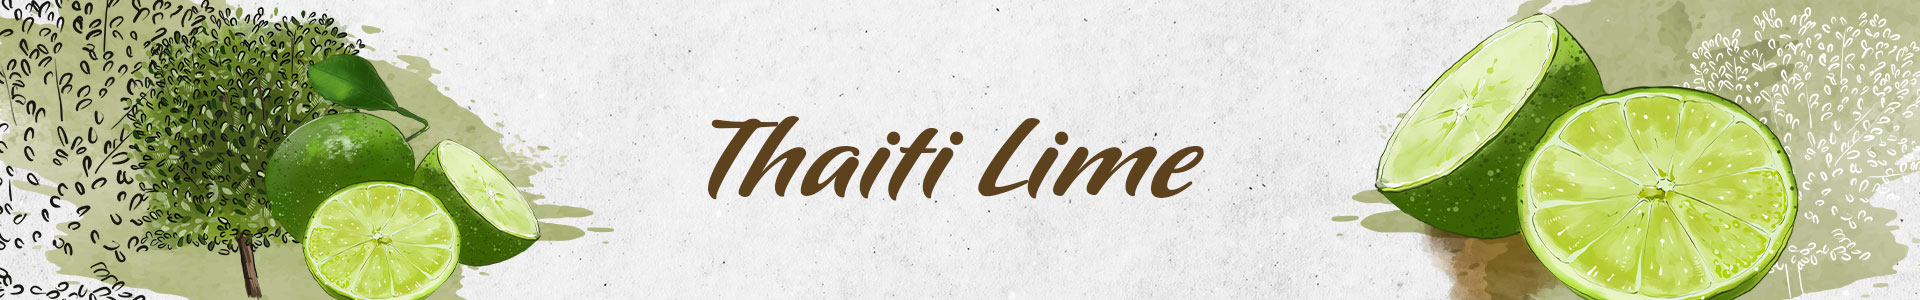 THAITI-LIME-SLIDER